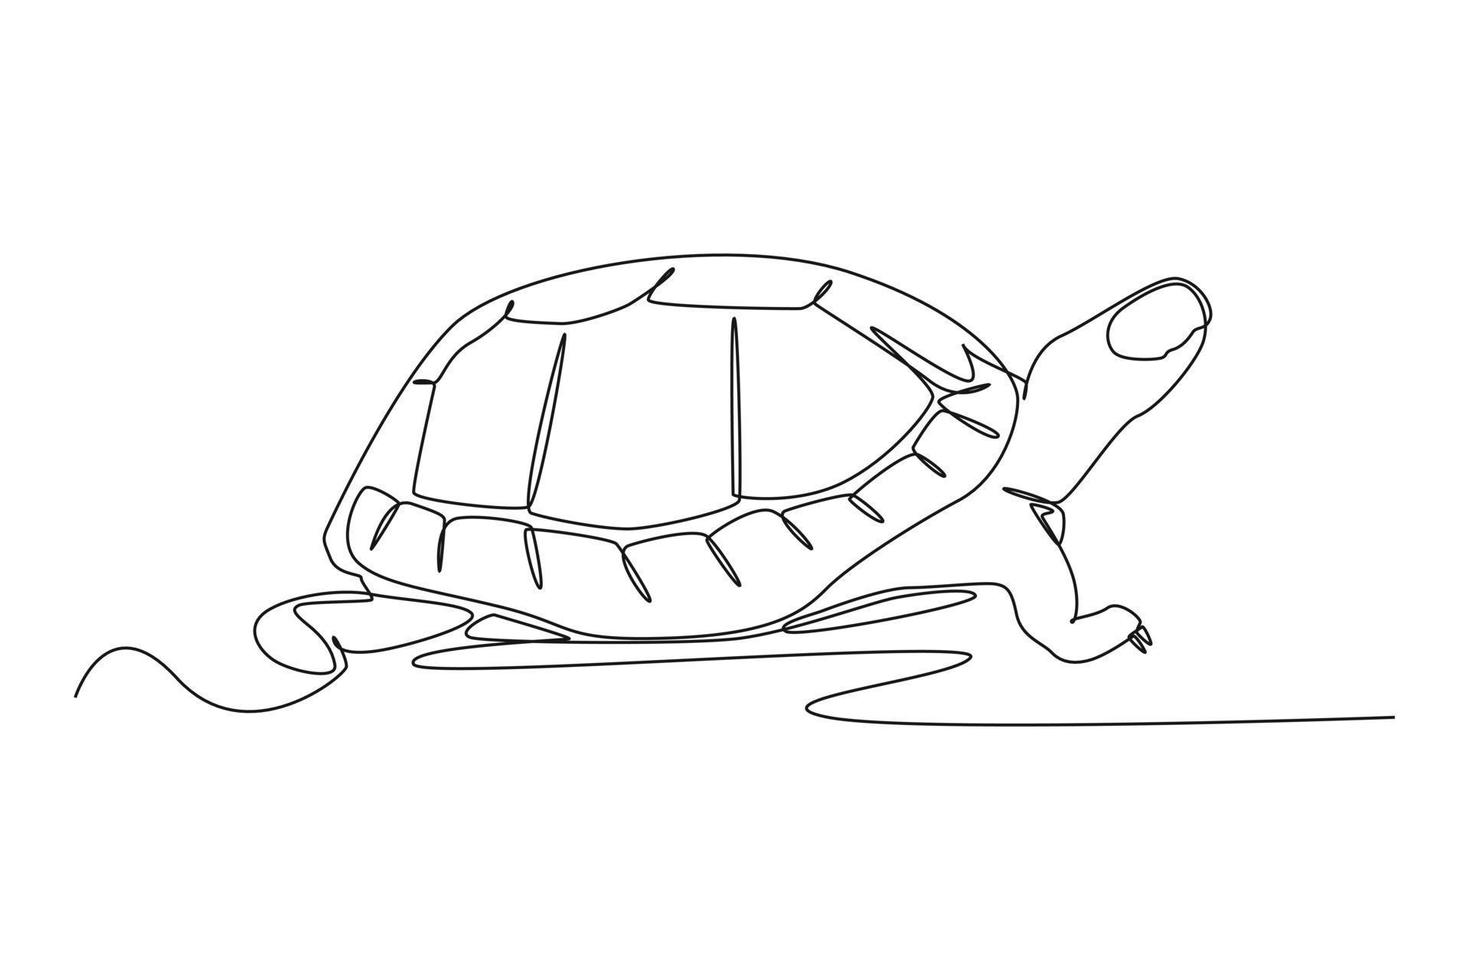 kontinuerlig en linje teckning en sköldpadda var krypande på de jord. djur begrepp enda linje dra design grafisk vektor illustration